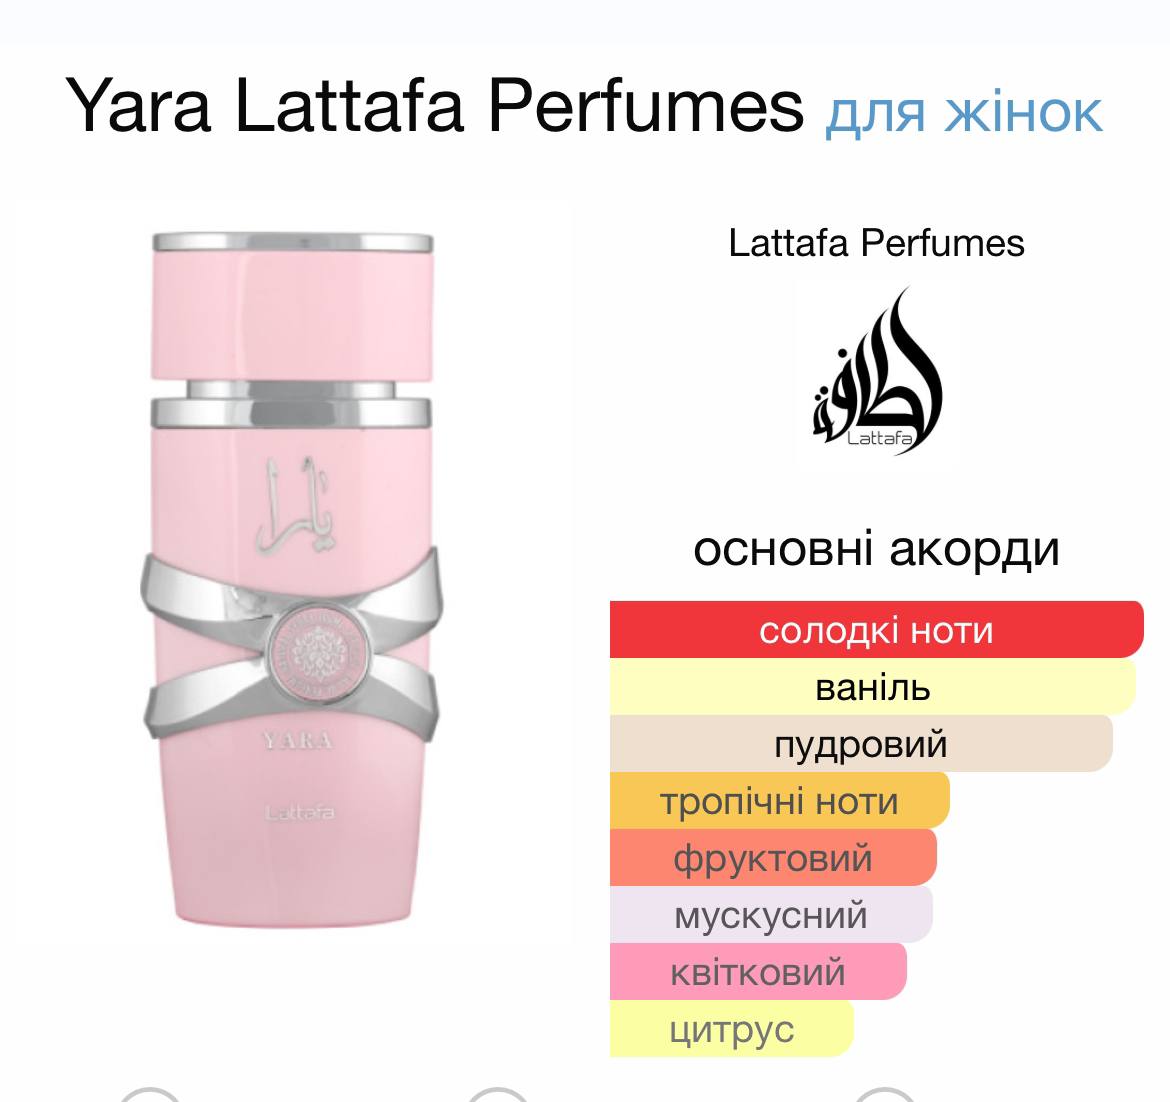 Lattafa Perfumes Yara - арабський хітЯРА (отакий каламбурчік вам сходу)